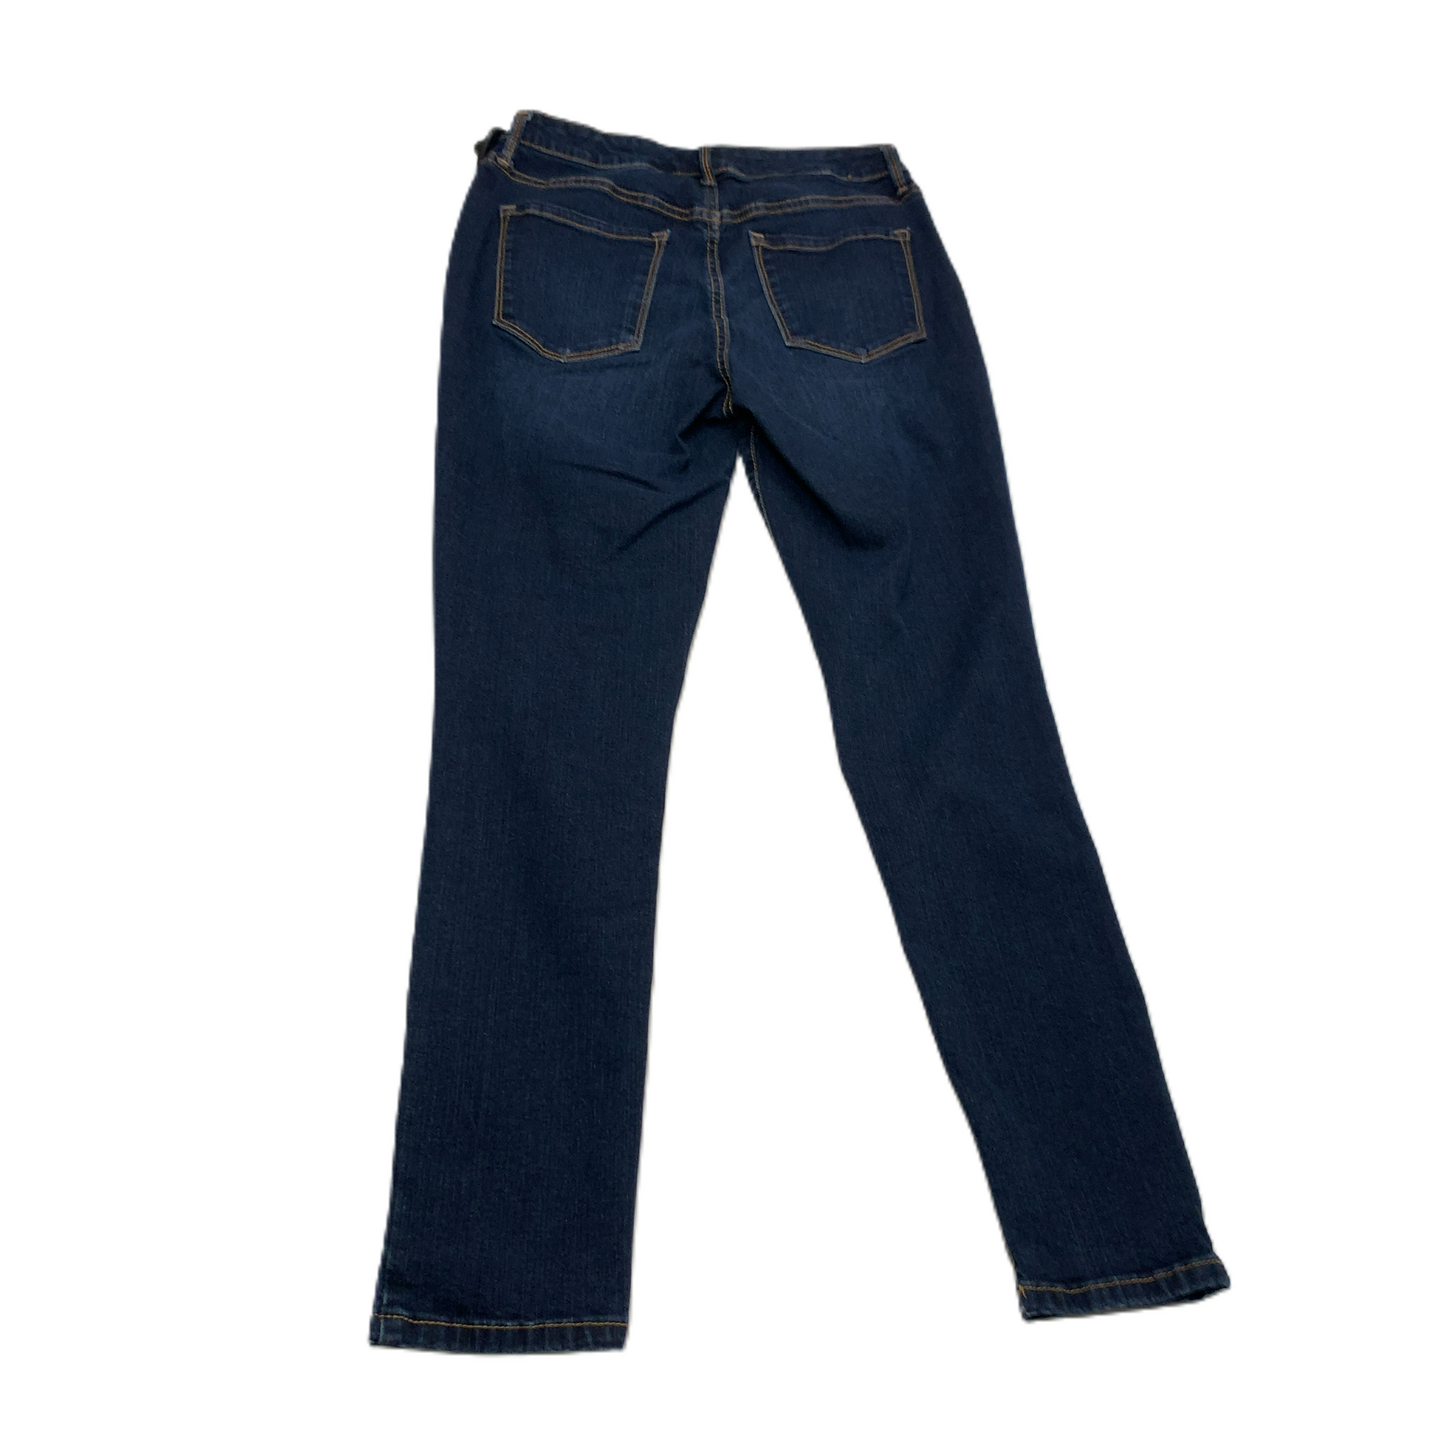 Jeans Skinny By Nine West  Size: 6